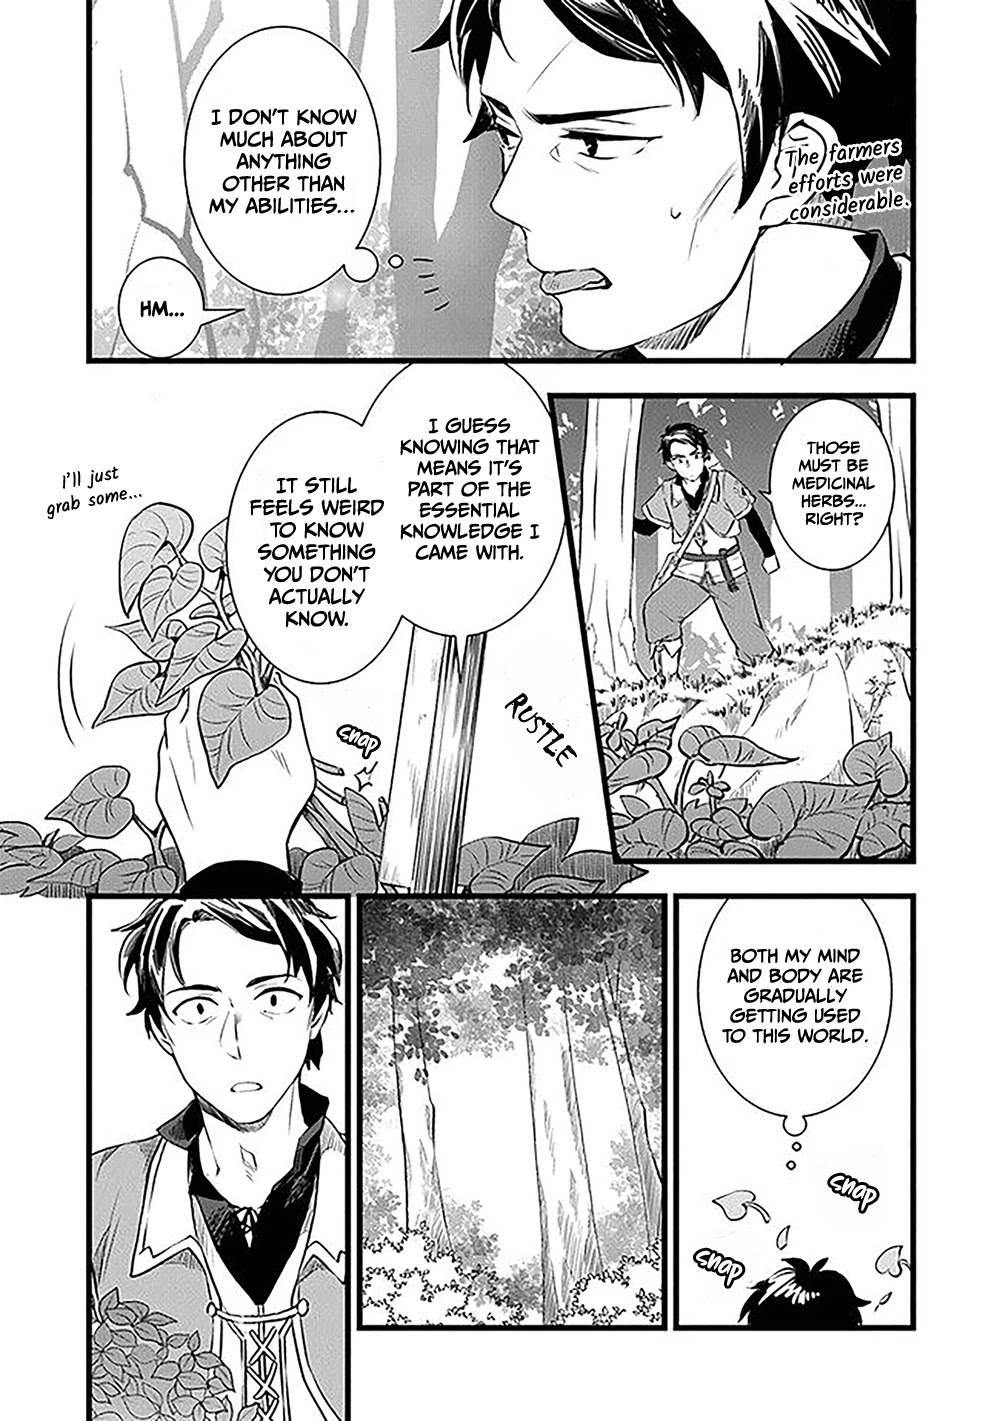 Manga Panels Without Context - Source: Tondemo Skill de Isekai Hourou Meshi